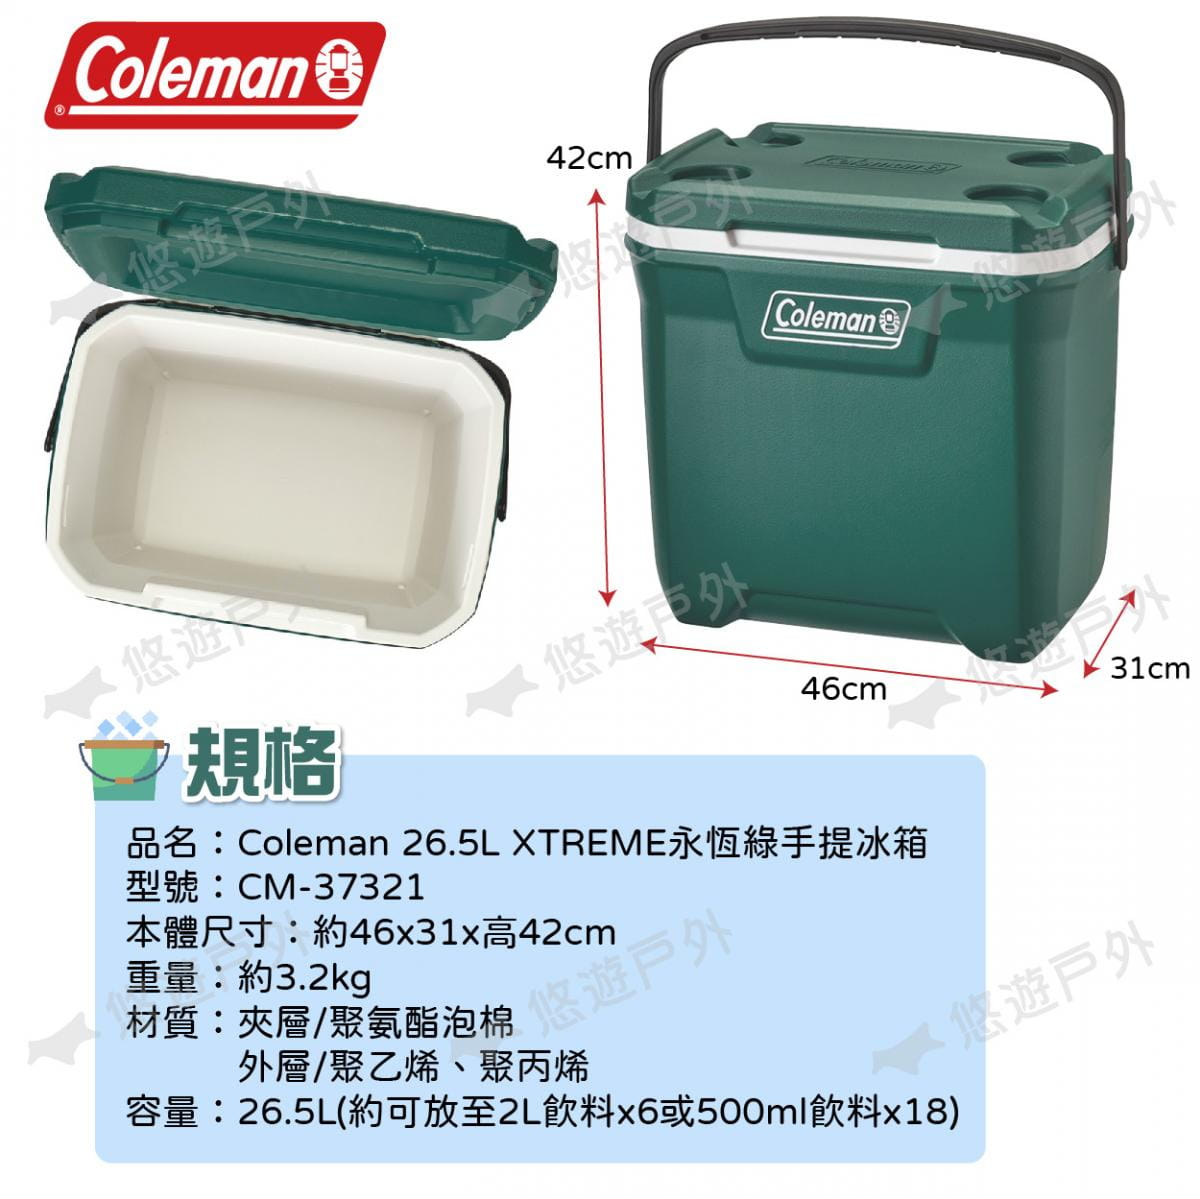 【Coleman】26.5L XTREME永恆綠手提冰箱 CM-37321 悠遊戶外 6